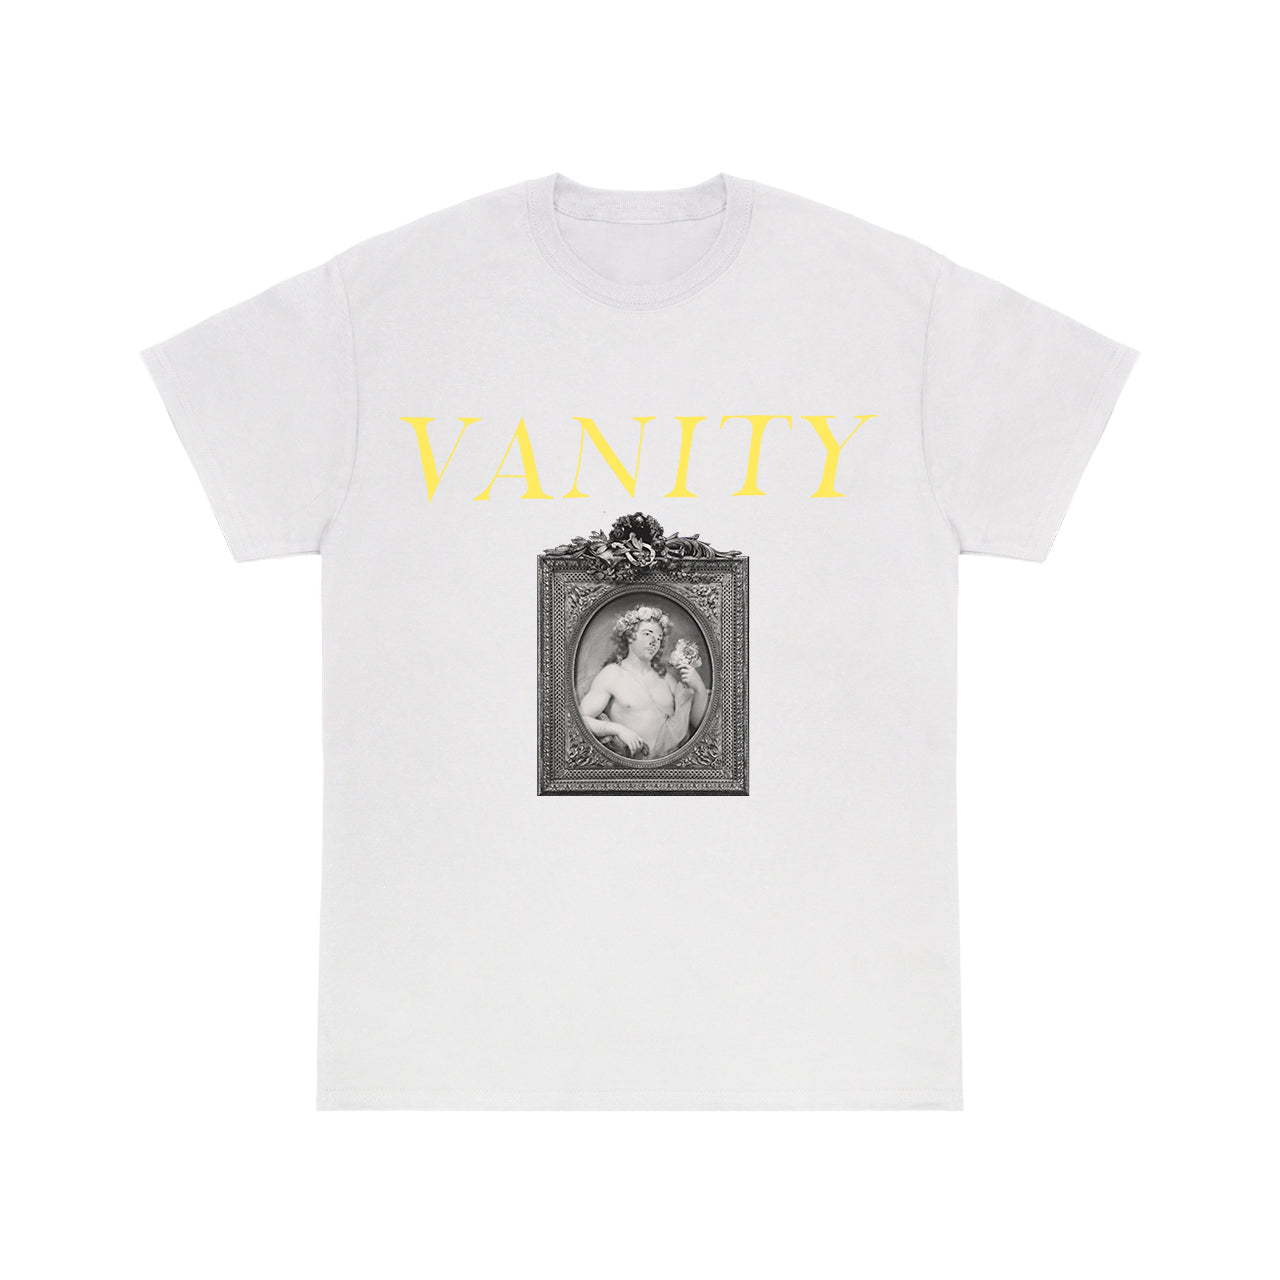 Atrip - Vanitee White T-Shirt